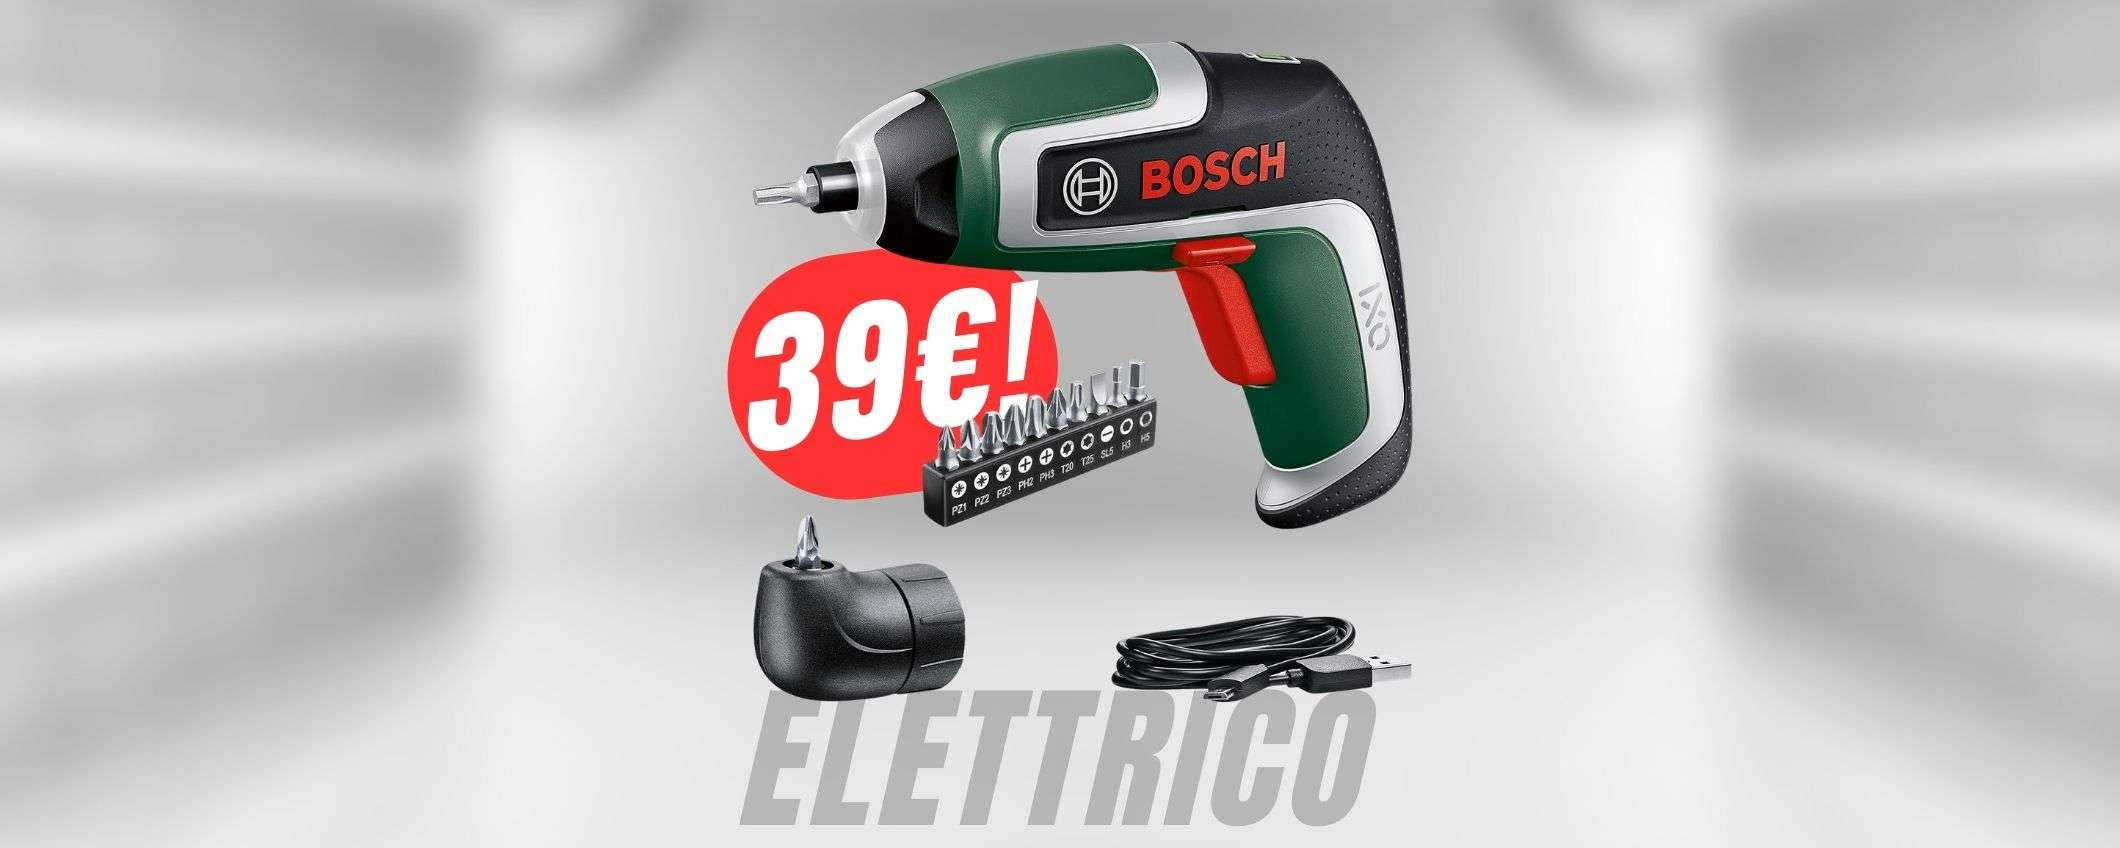 FAI PRESTO! L'avvitatore Bosch è a 39€, ma per pochissimo tempo!